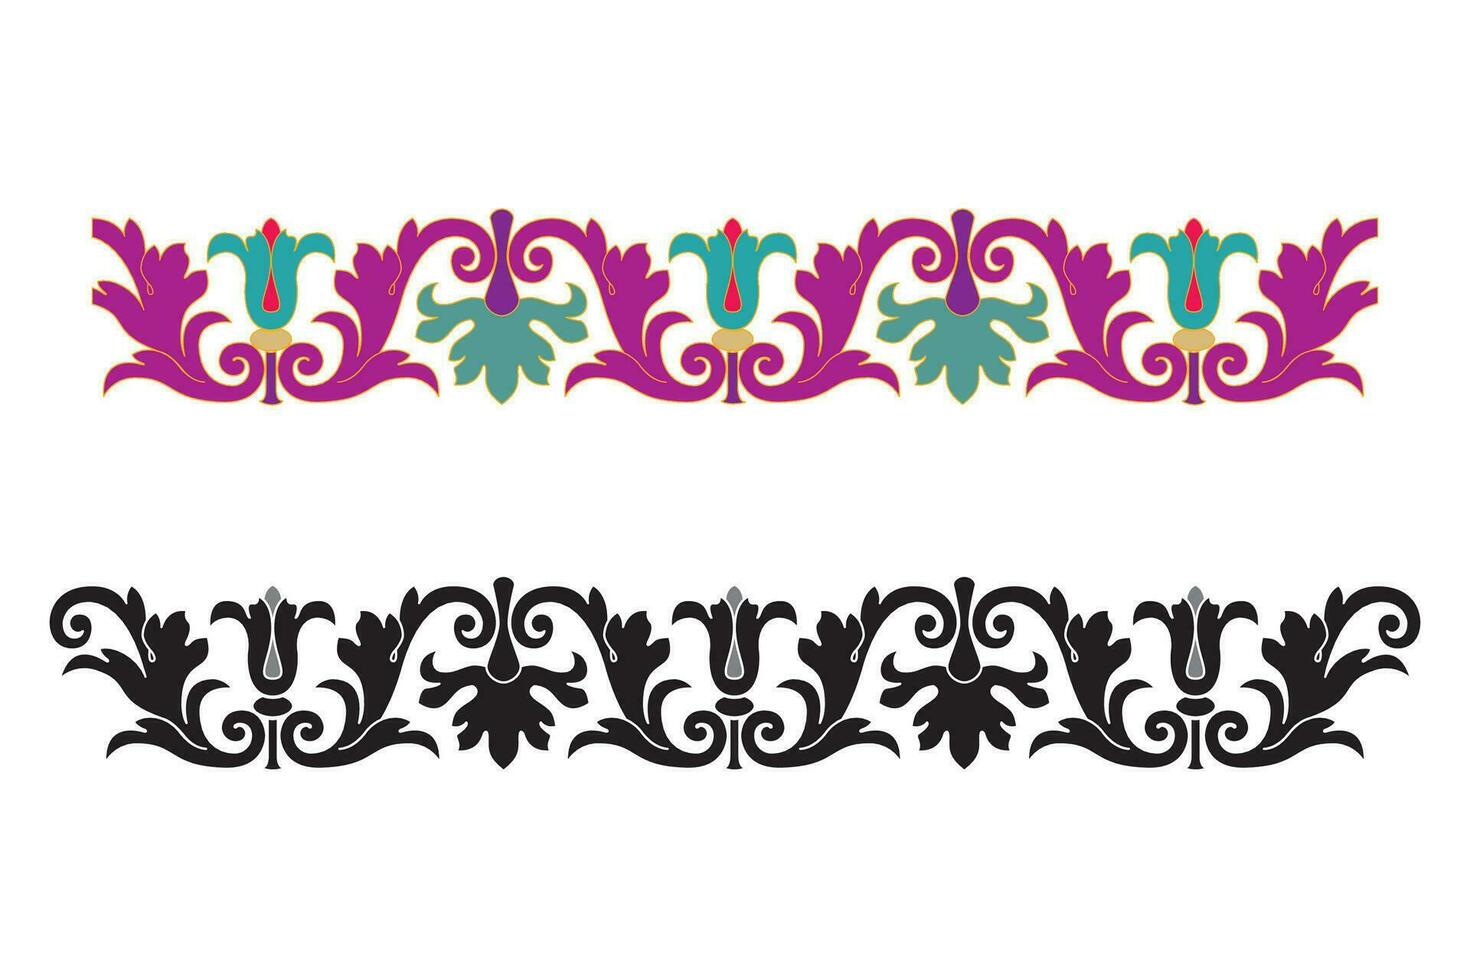 Jahrgang Blumen- kalligraphisch Blumen- Vignette scrollen Ecken Zier Design Elemente schwarz einstellen isoliert Vektor